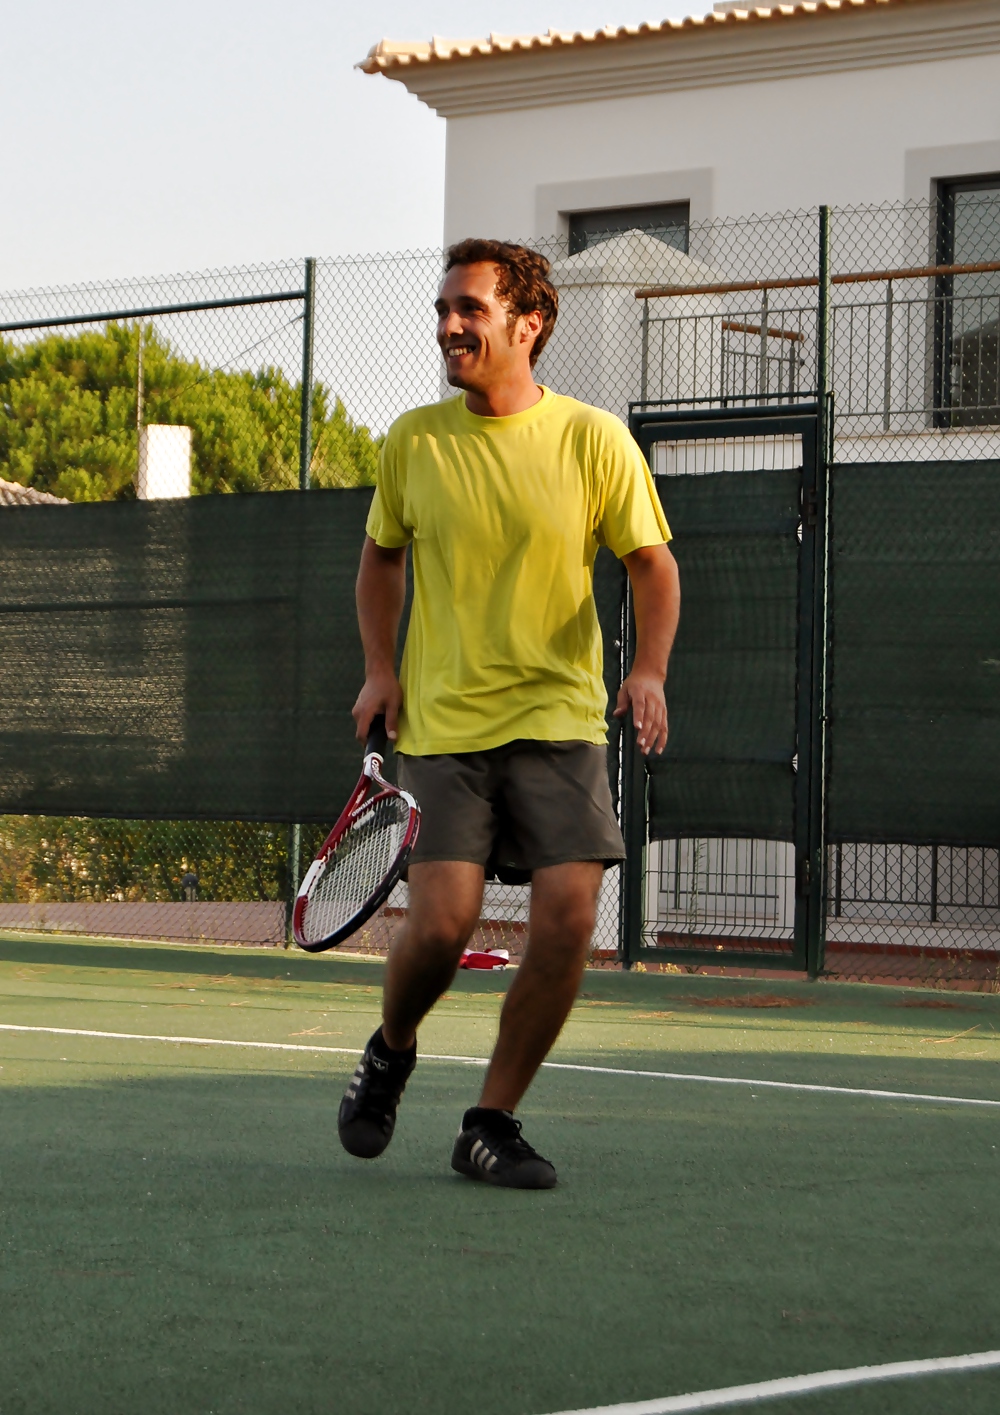 Me playing tenis